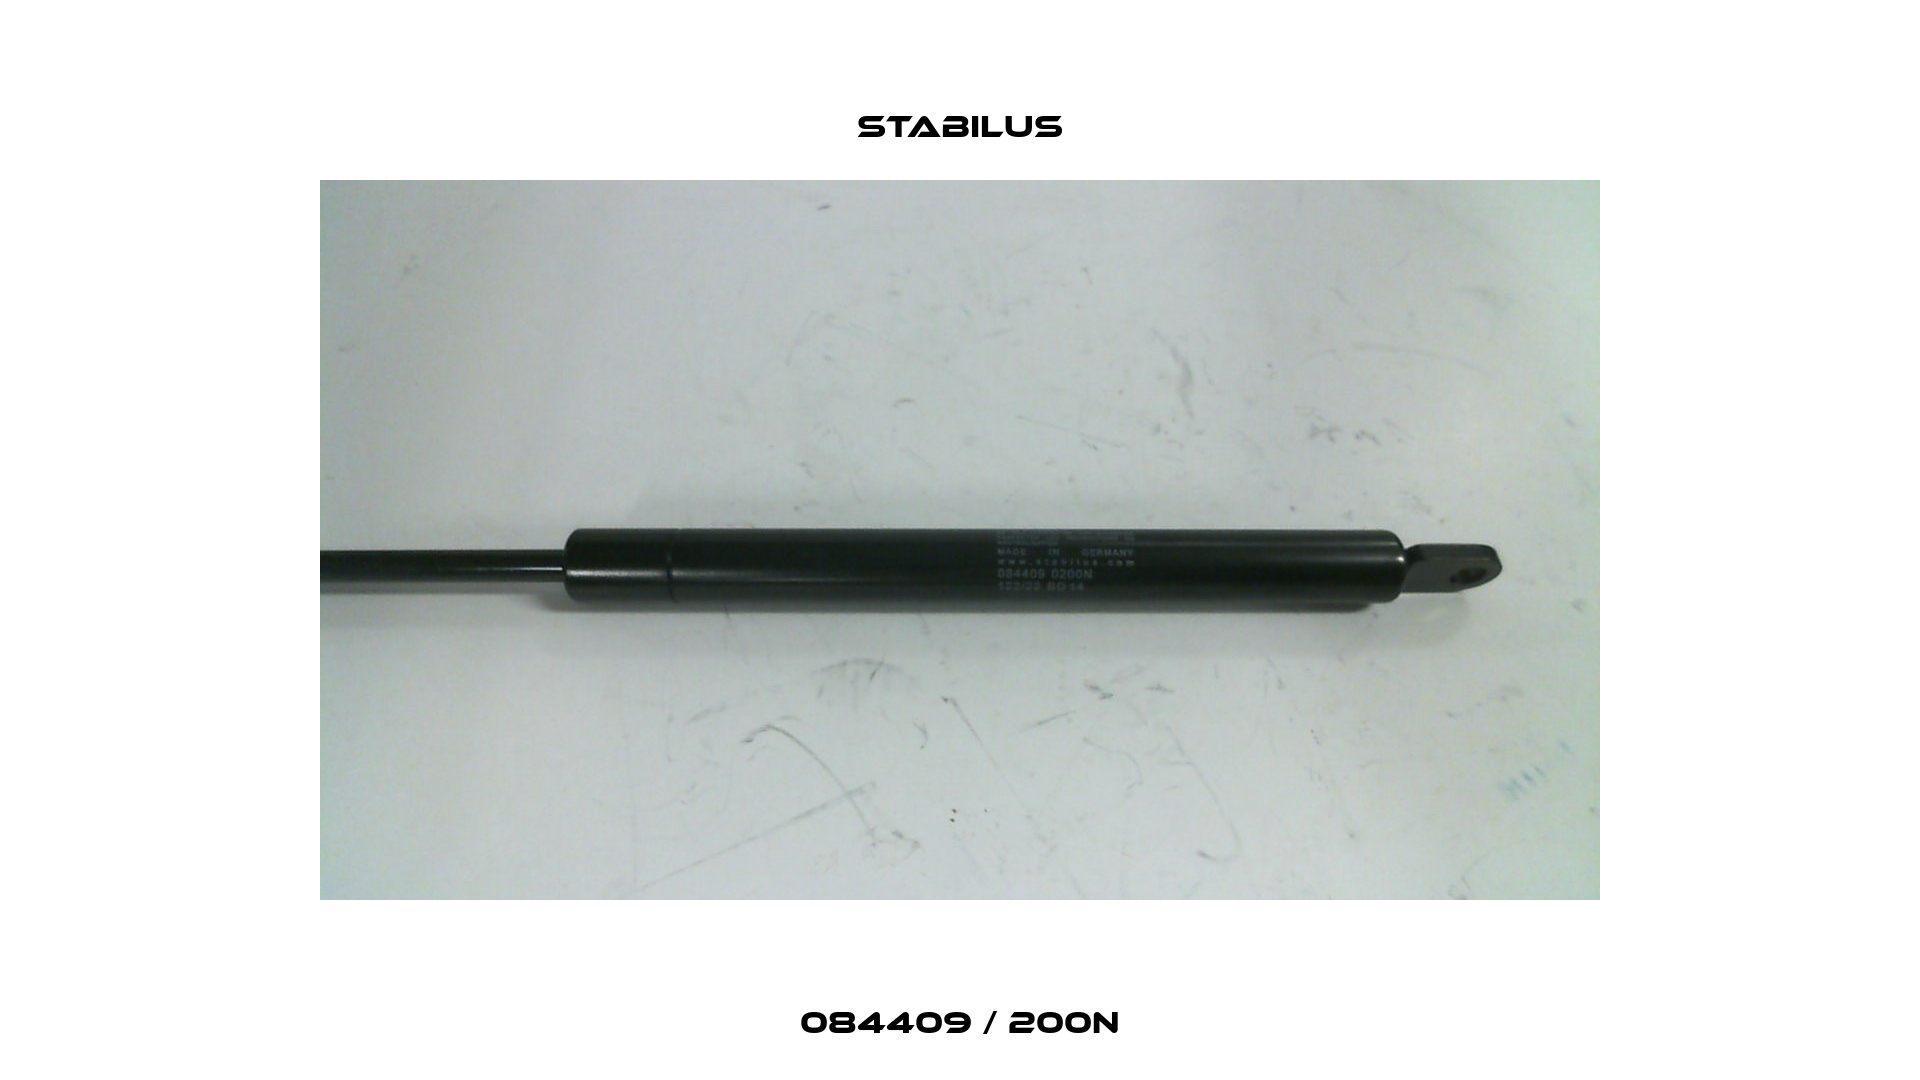 084409 / 200N Stabilus